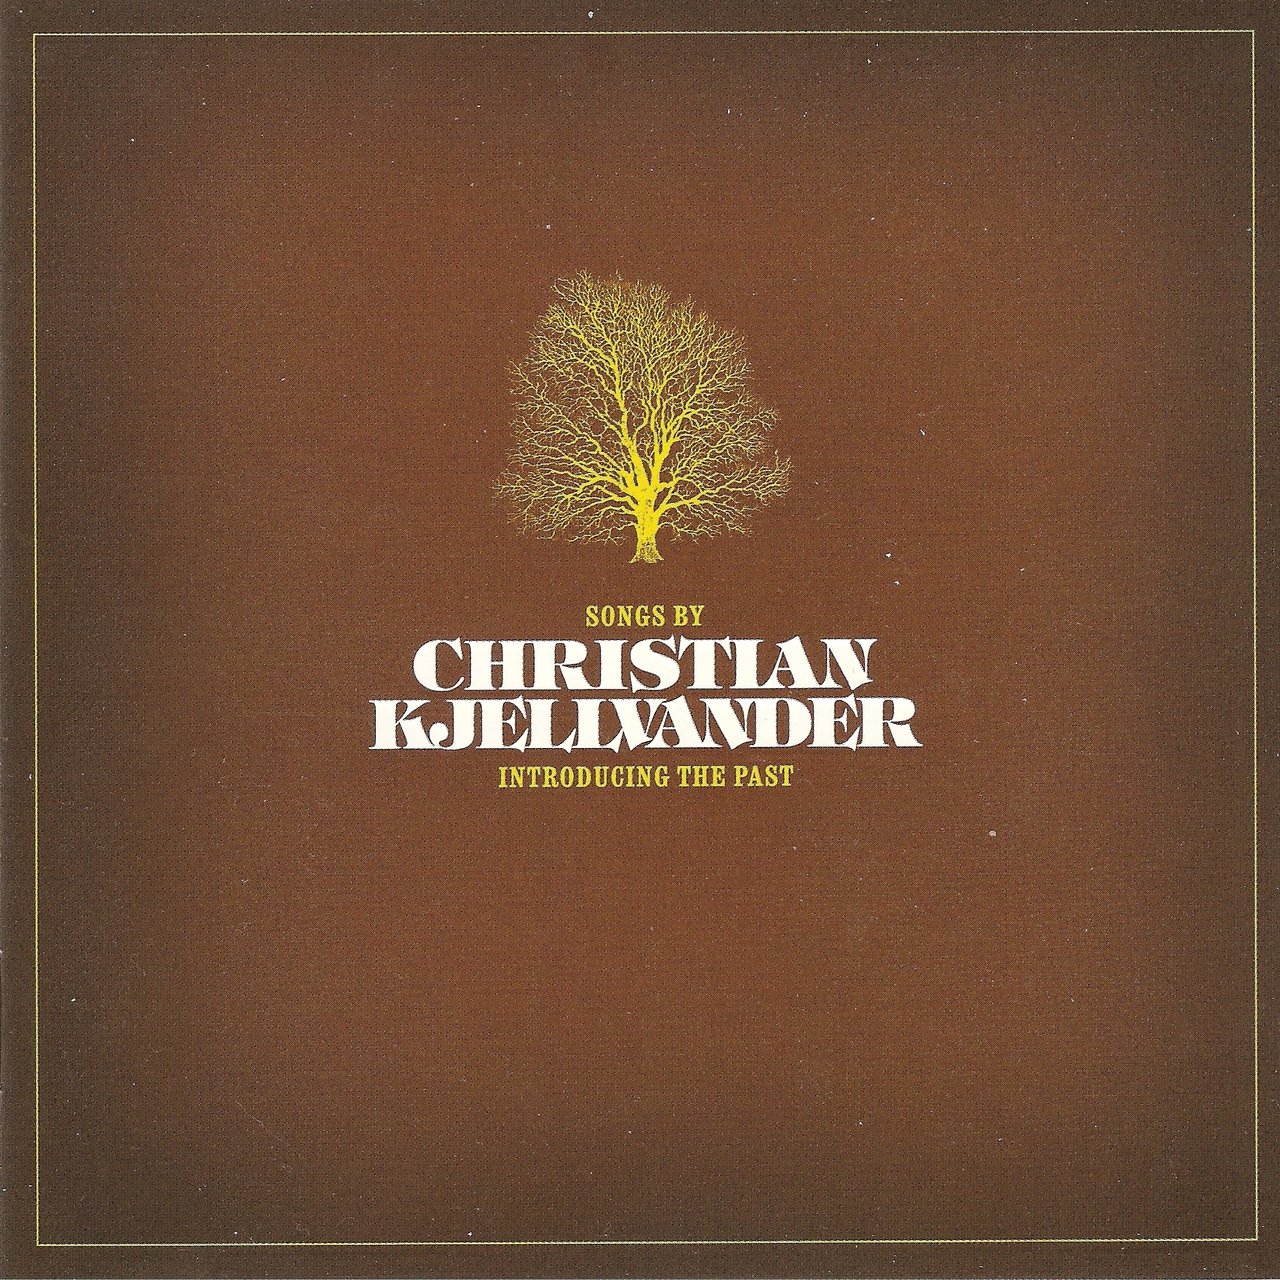 Christian Kjellvander - "Introducing the Past" Doppel-CD